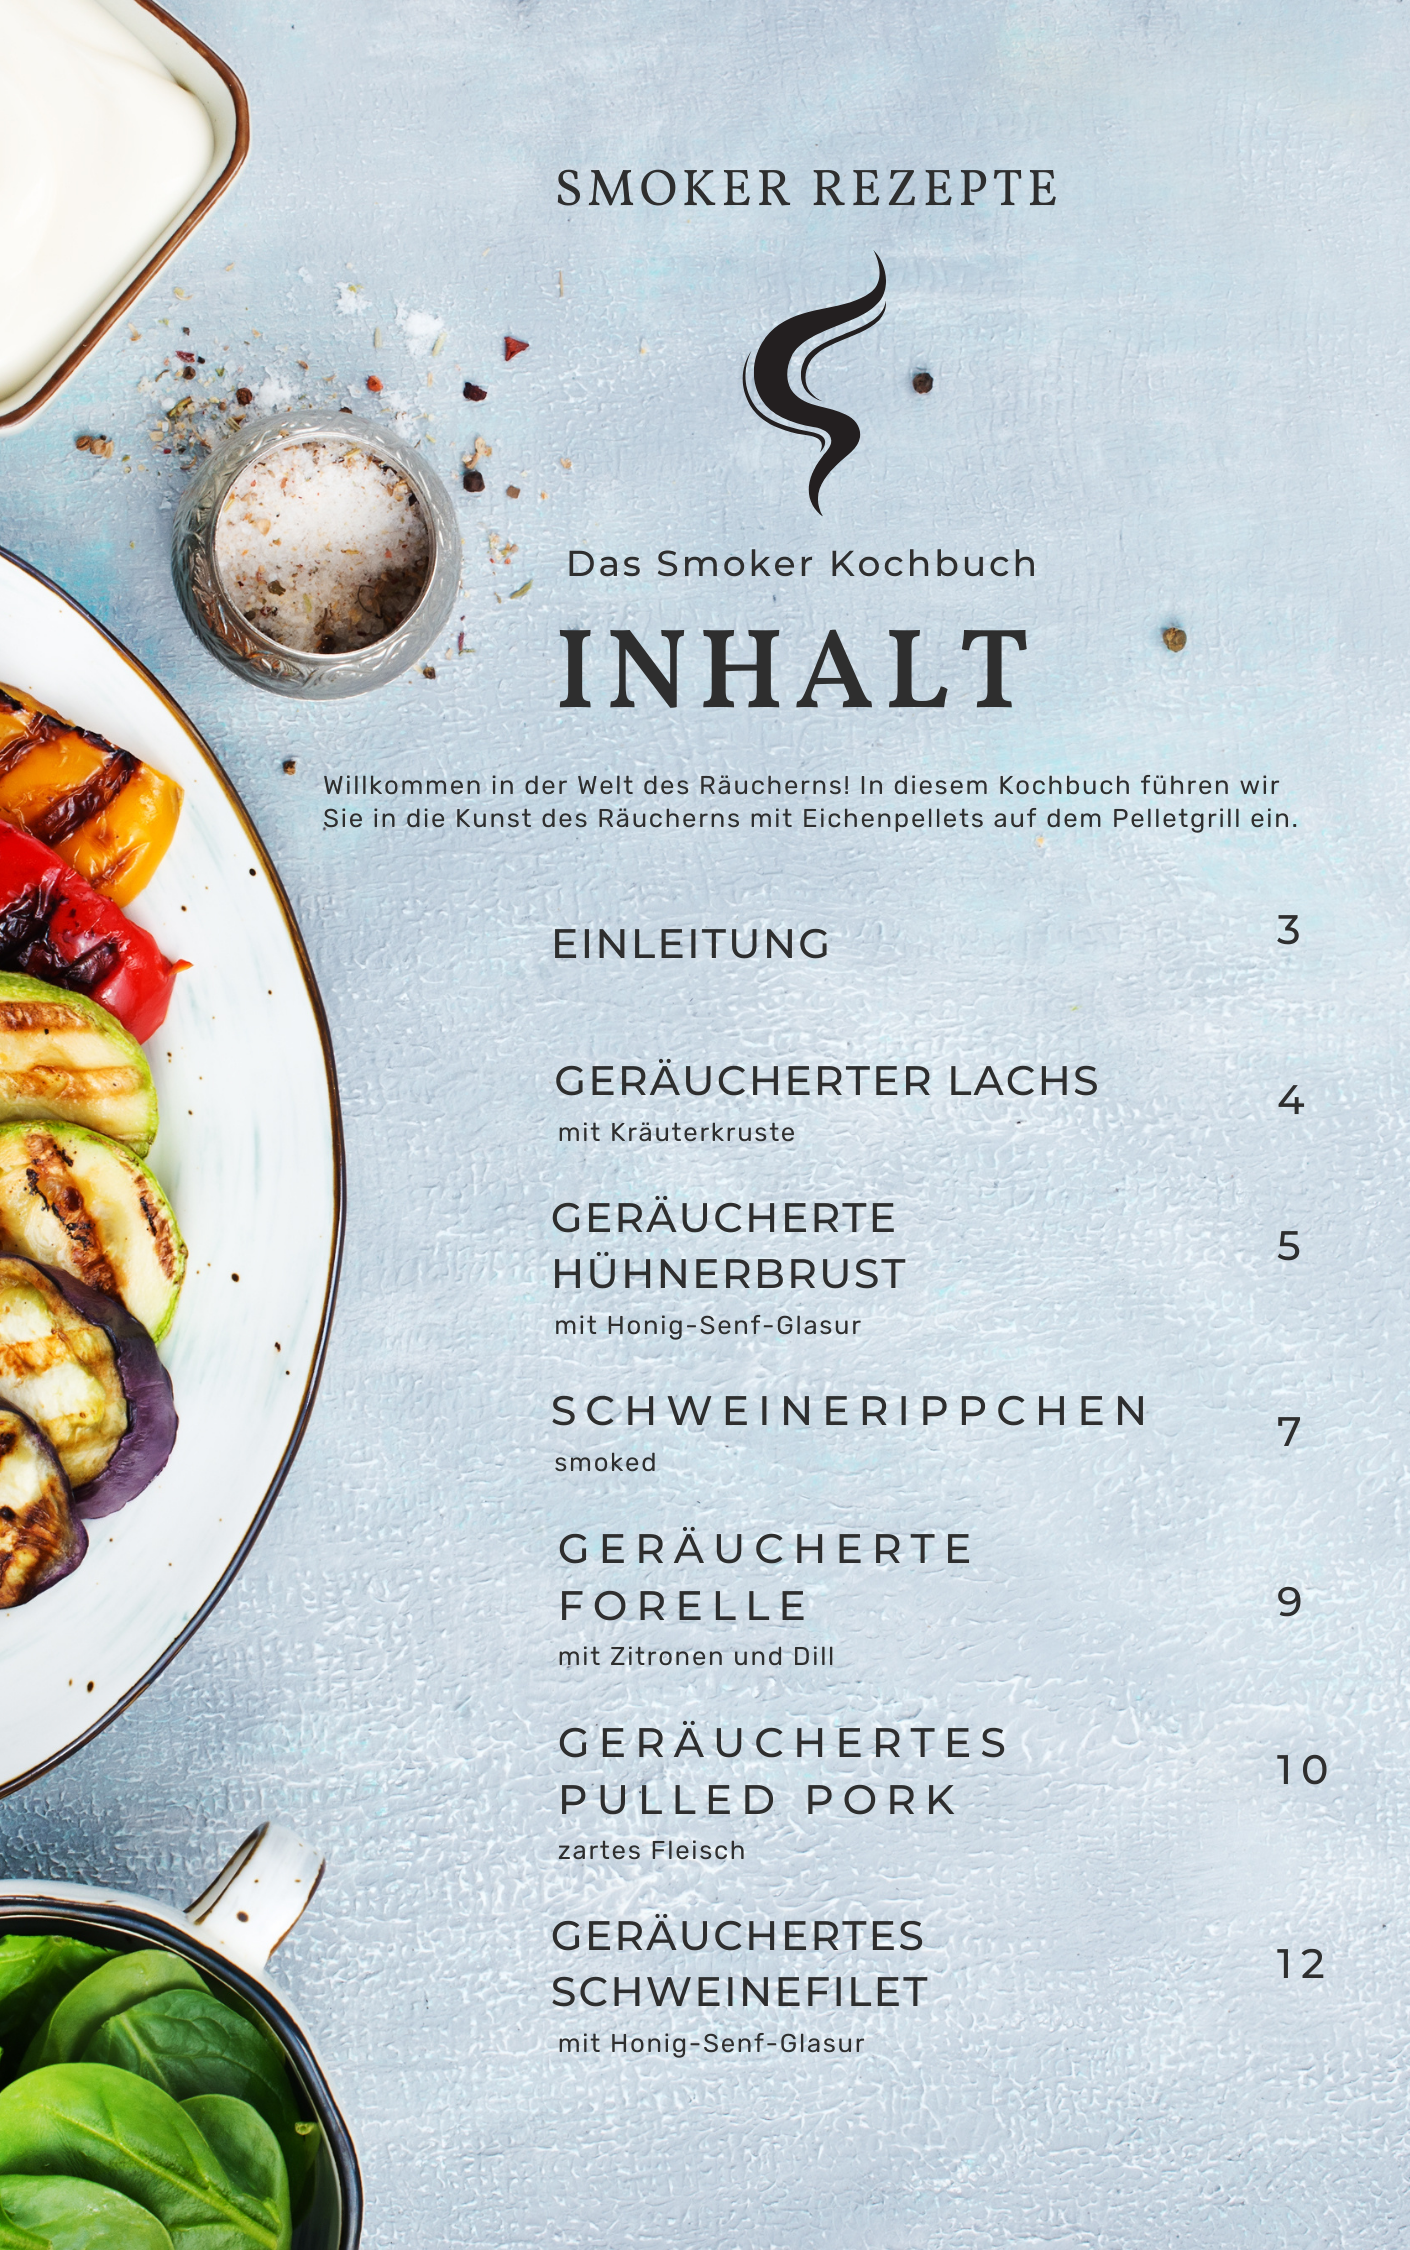 Gratis Kochbuch: Verblüffen Sie Ihre Gäste – Erstaunliche Eichenpellet-Rezepte zum Smoken!